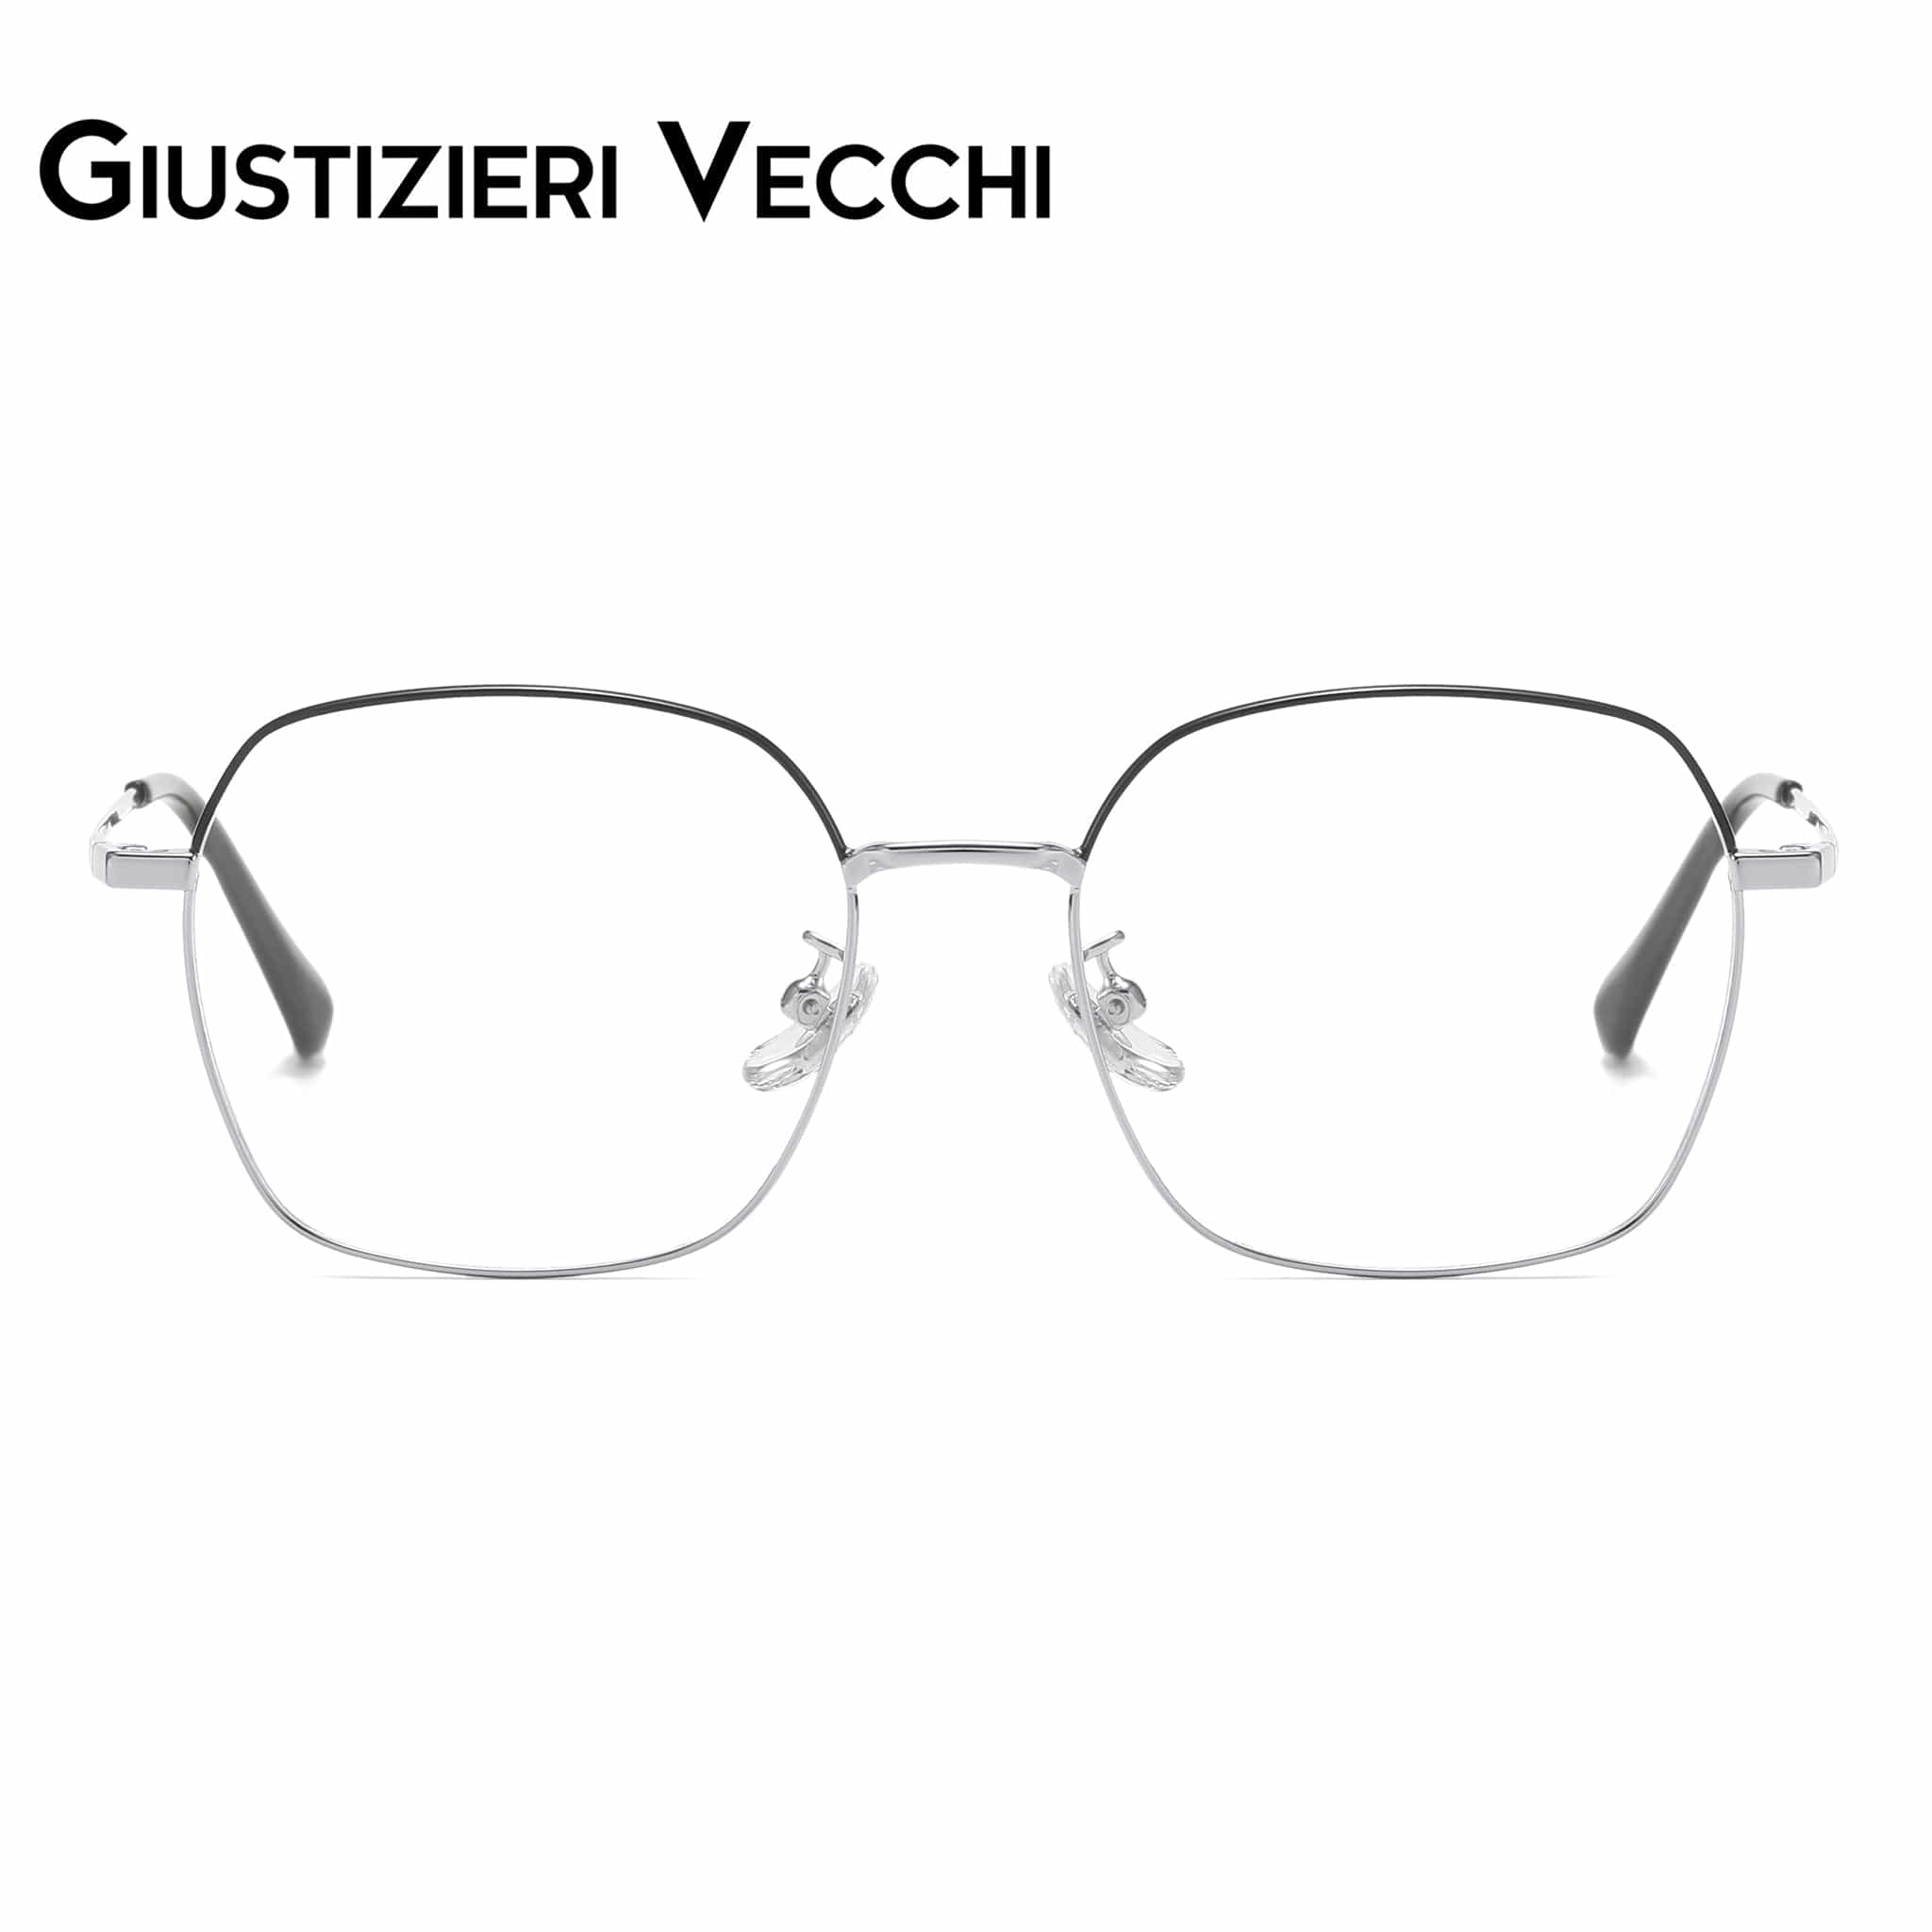 GIUSTIZIERI VECCHI Eyeglasses Small / Black with Silver Chill Mist Uno